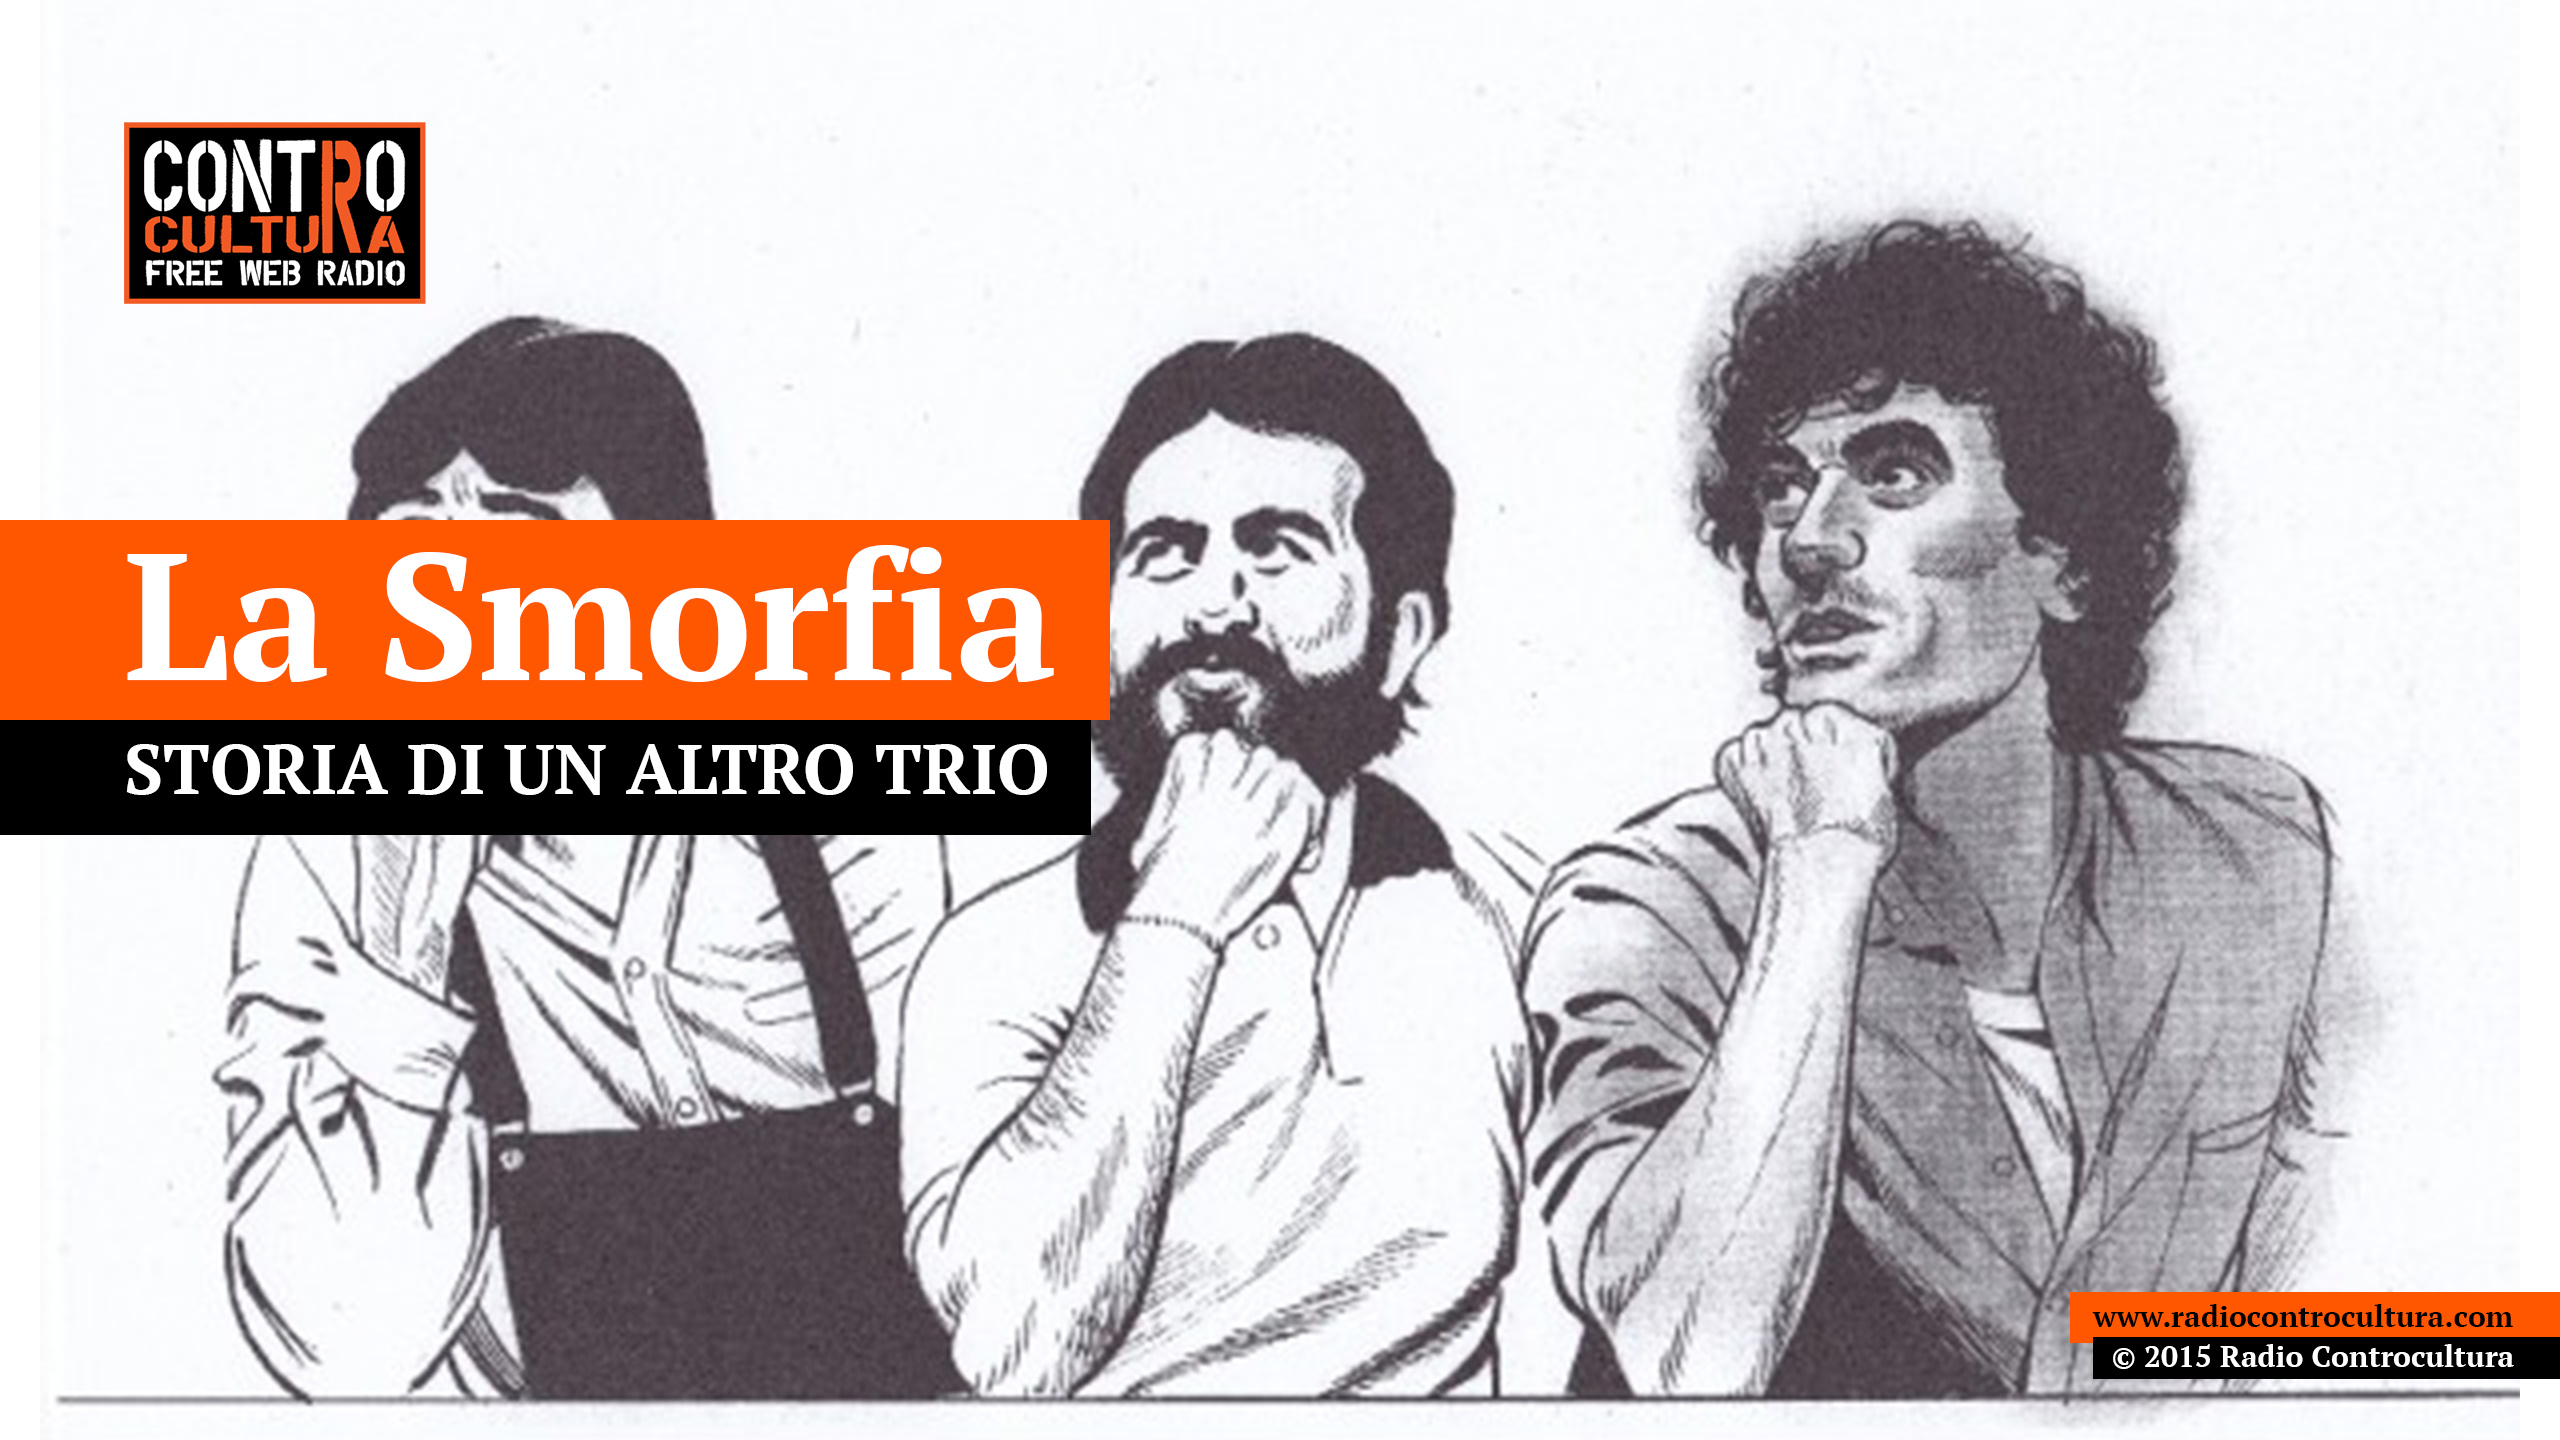 Radio Controcultura imperfetto scuola insegnare storia albano logo free web